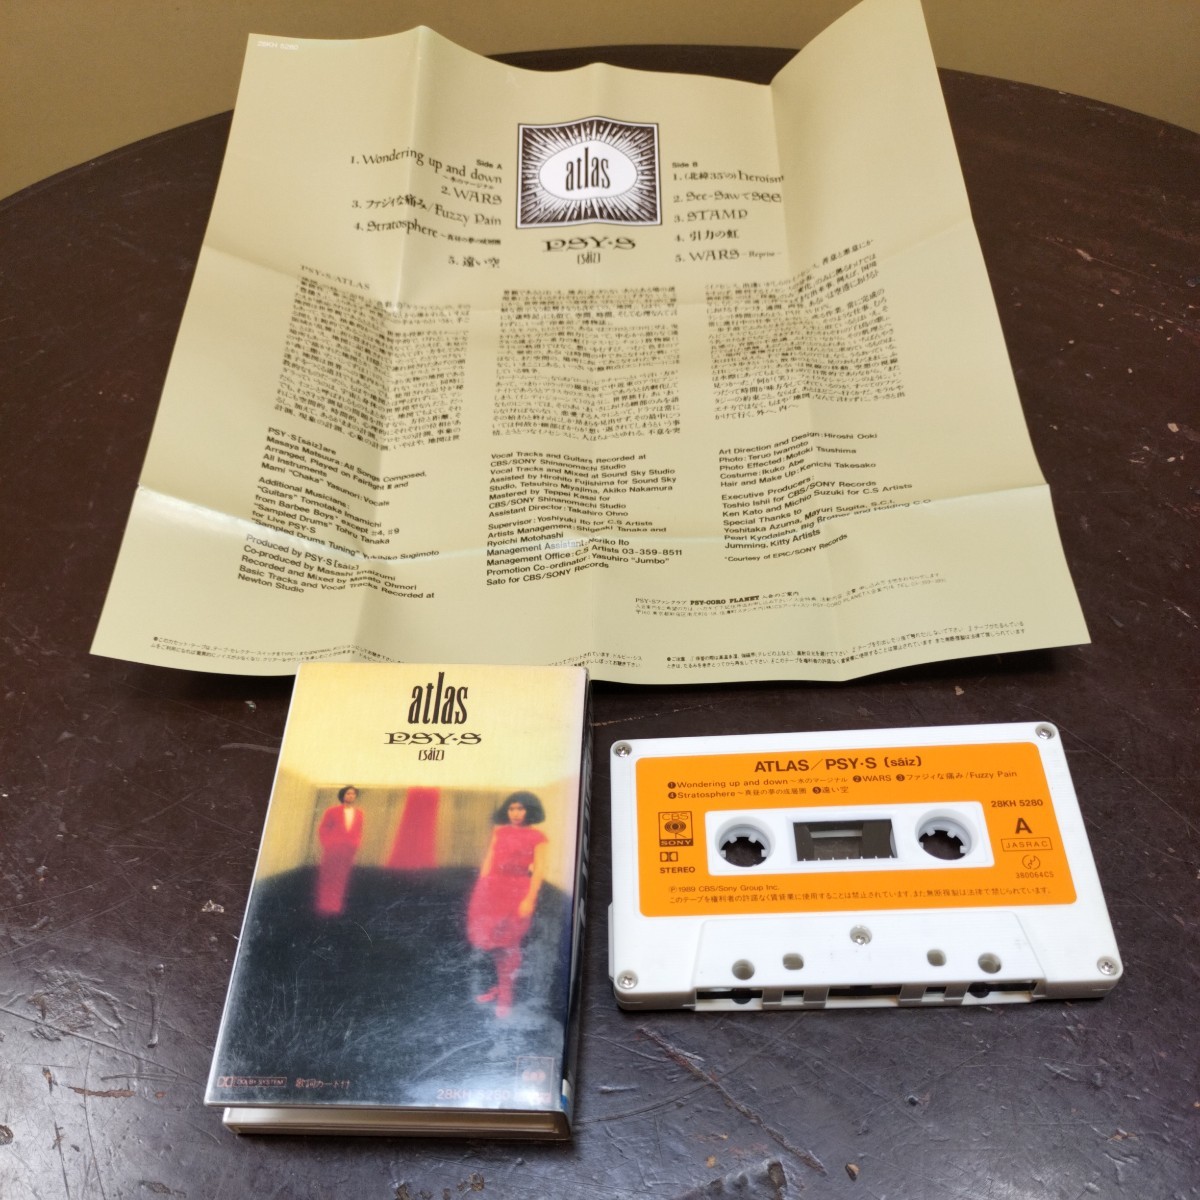 1989/カセットテープ/PSY・S/ATLAS/サイズ/アトラス/cassette tape/CBS/SONY/当時物/コレクション_画像1